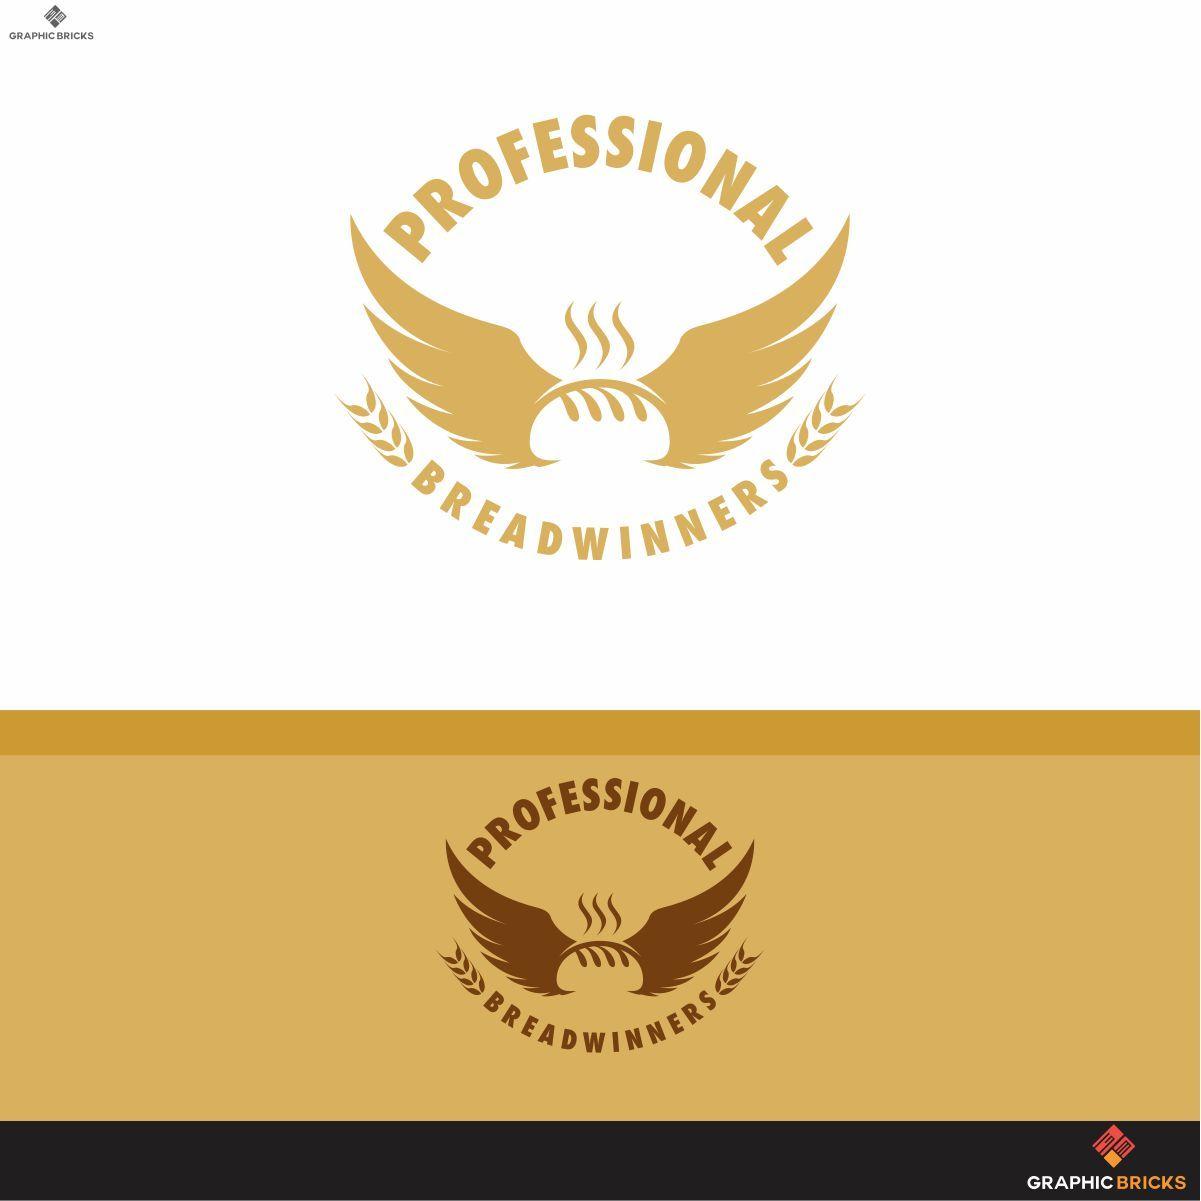 Breadwinners Logo - Modern, Elegant, Entrepreneur Logo Design for Professional ...